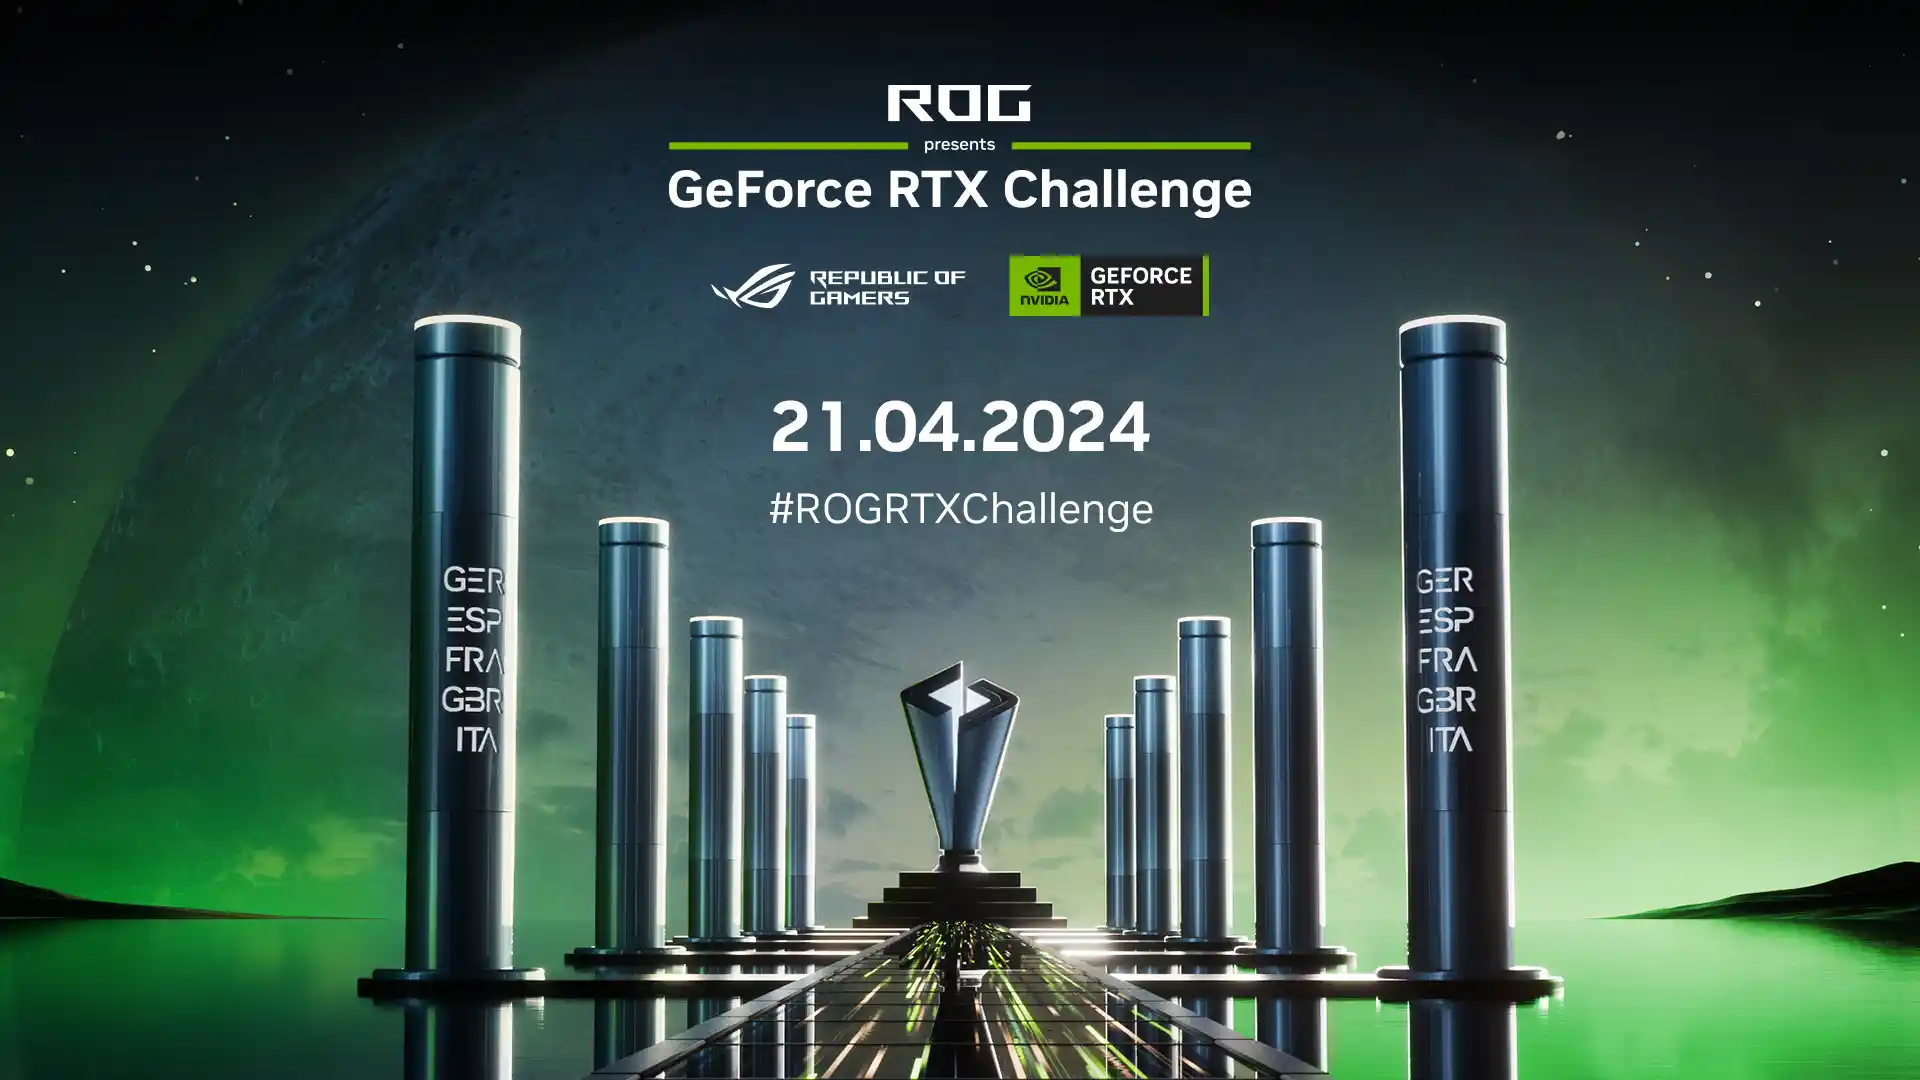 L'Italia partecipa a GeForce RTX Challenge, torneo europeo organizzato con ASUS ROG - data e dove vedere in streaming e offerte hardware